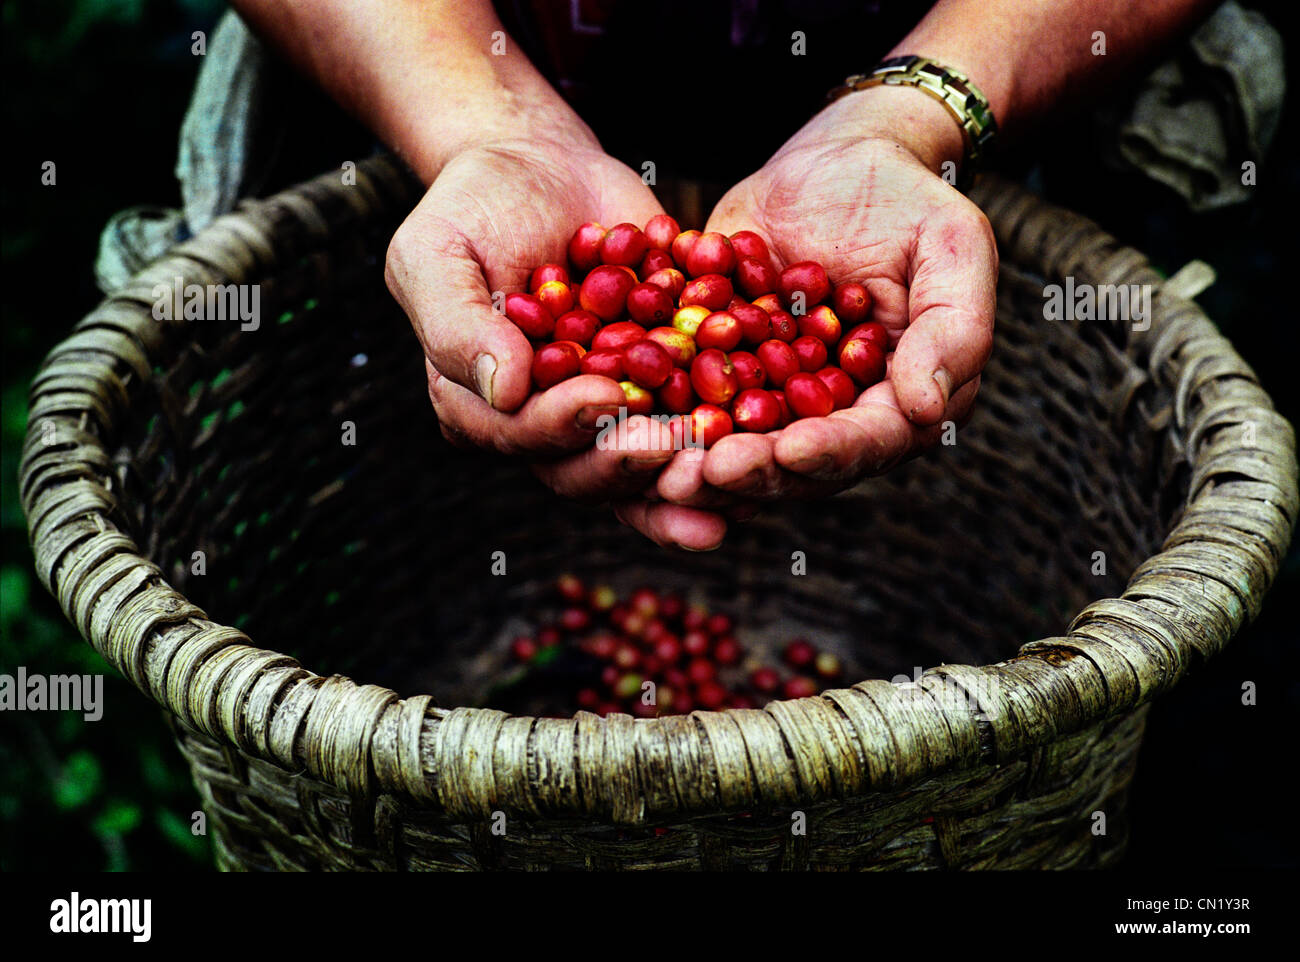 Un fermier montre les baies de café d'un panier Banque D'Images